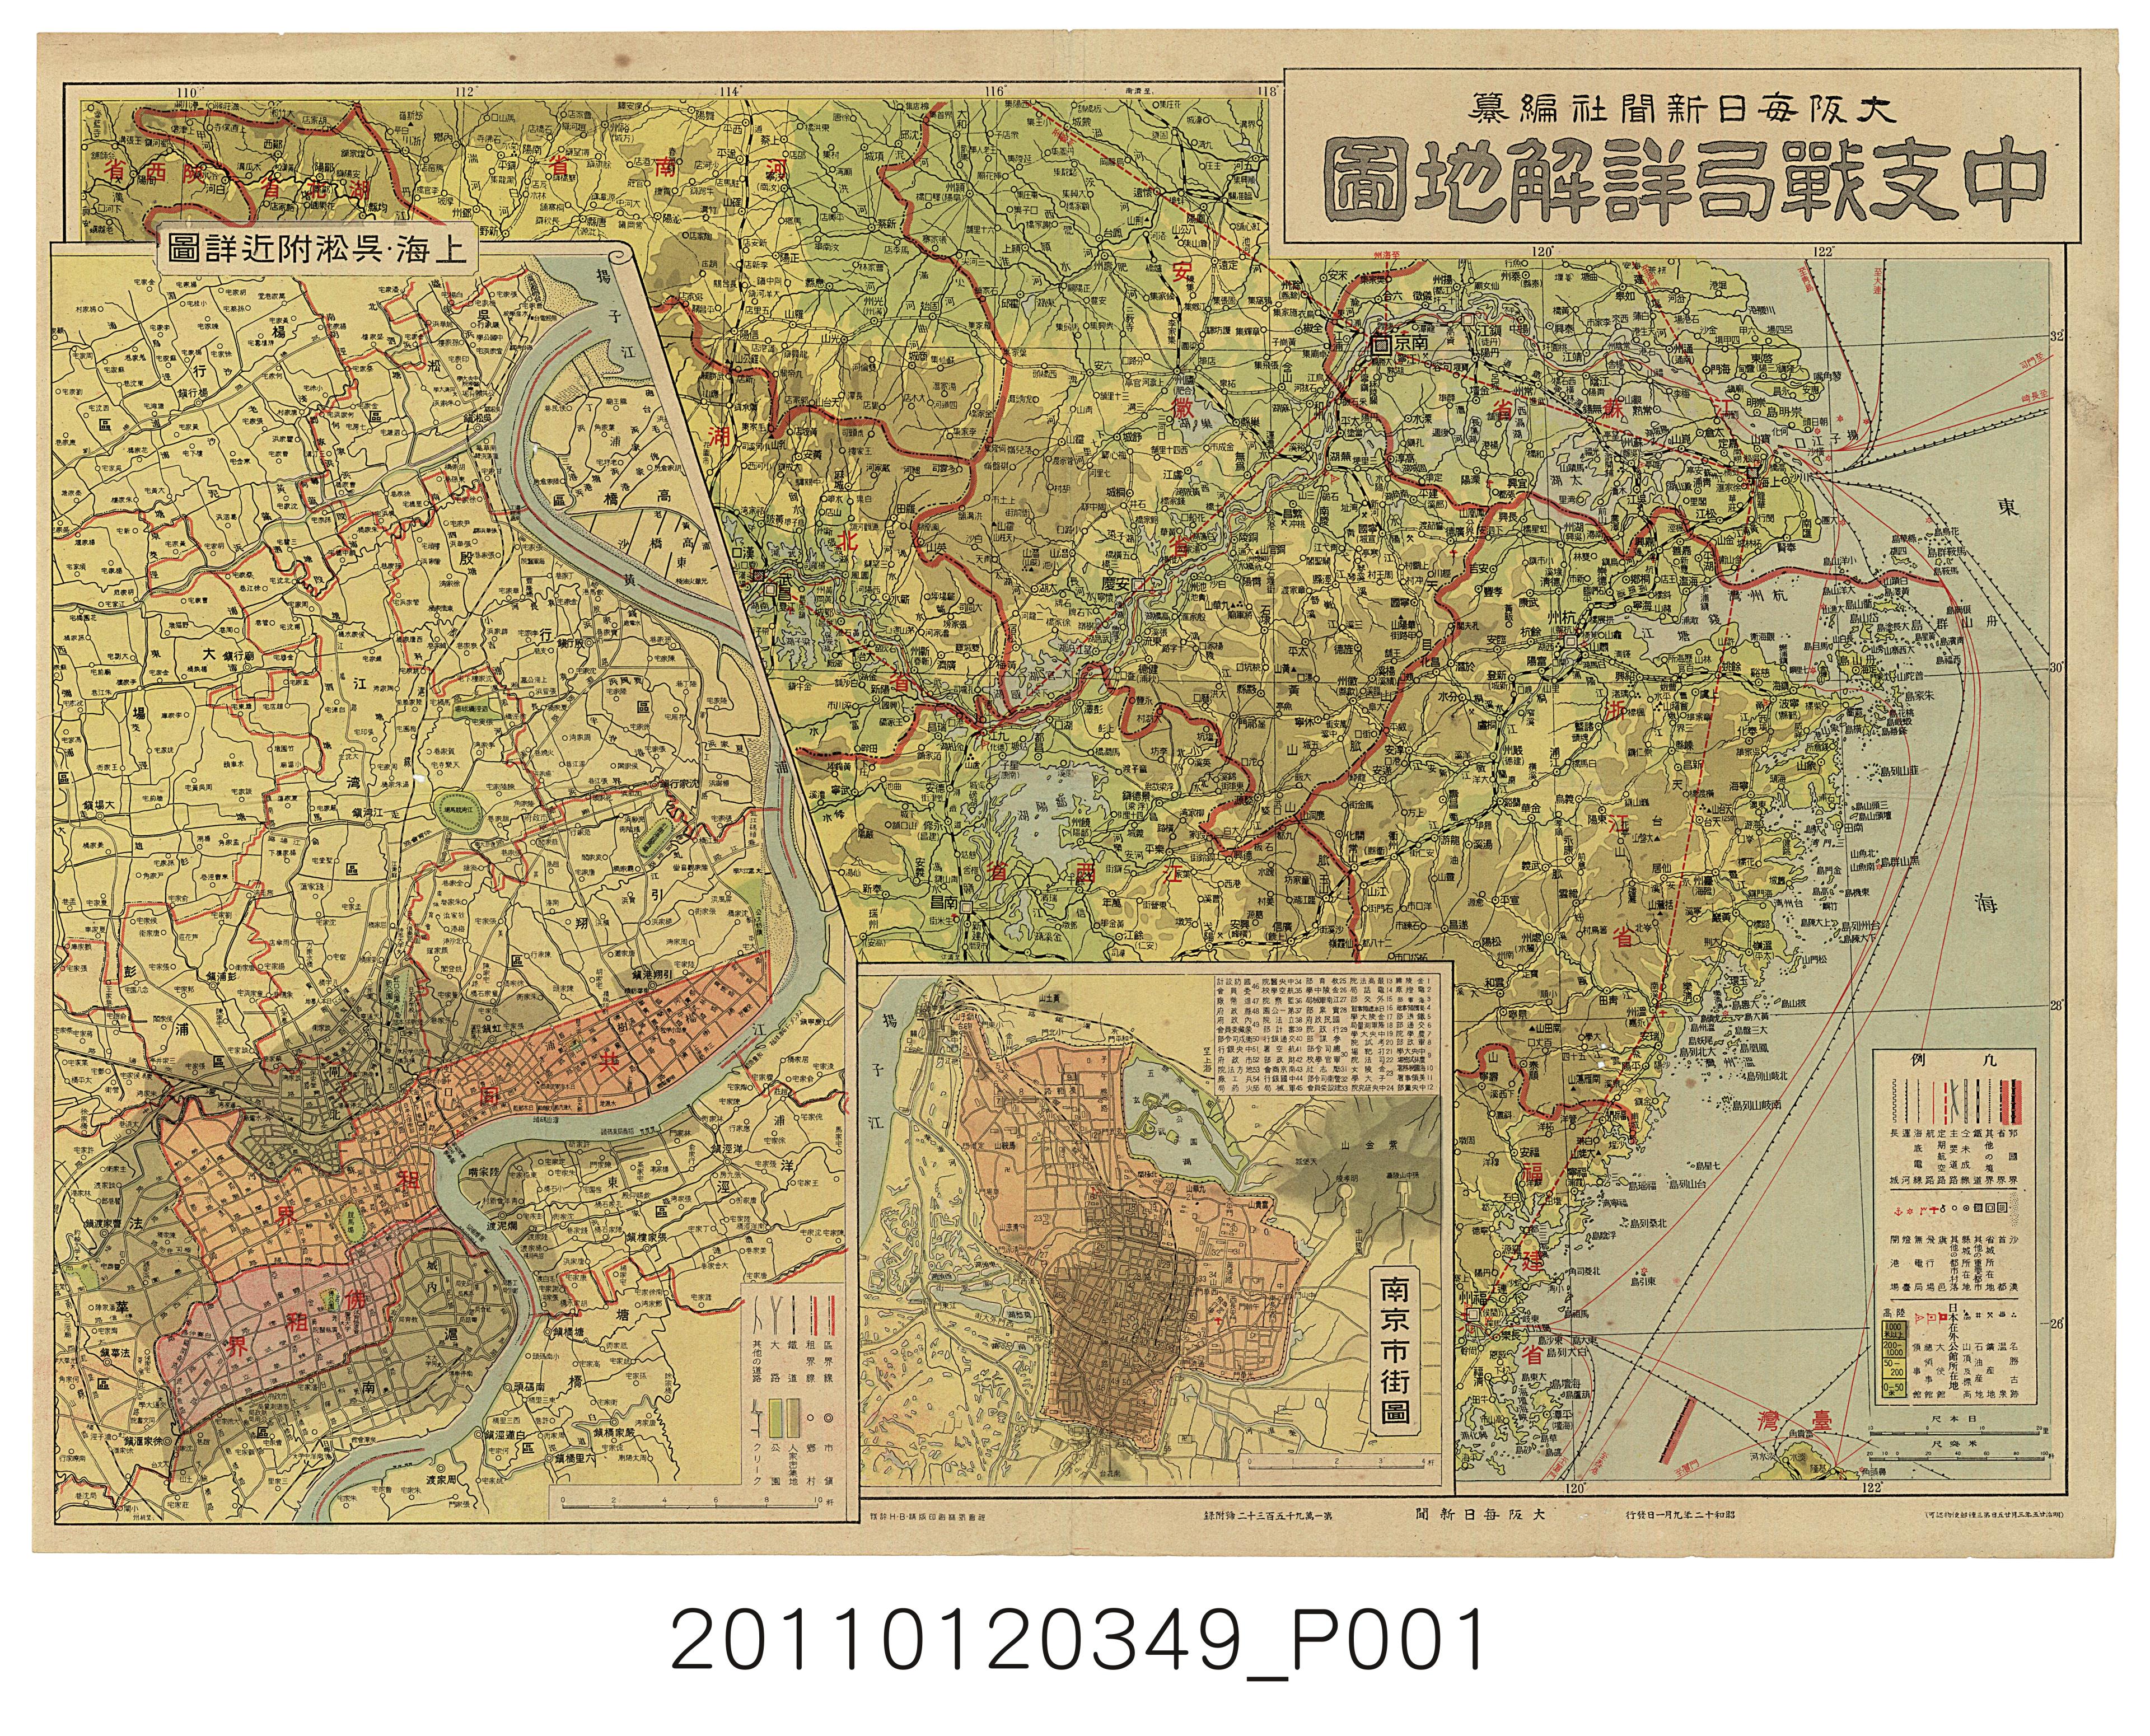 大阪每日新聞社〈中支戰局詳解地圖〉 (共1張)